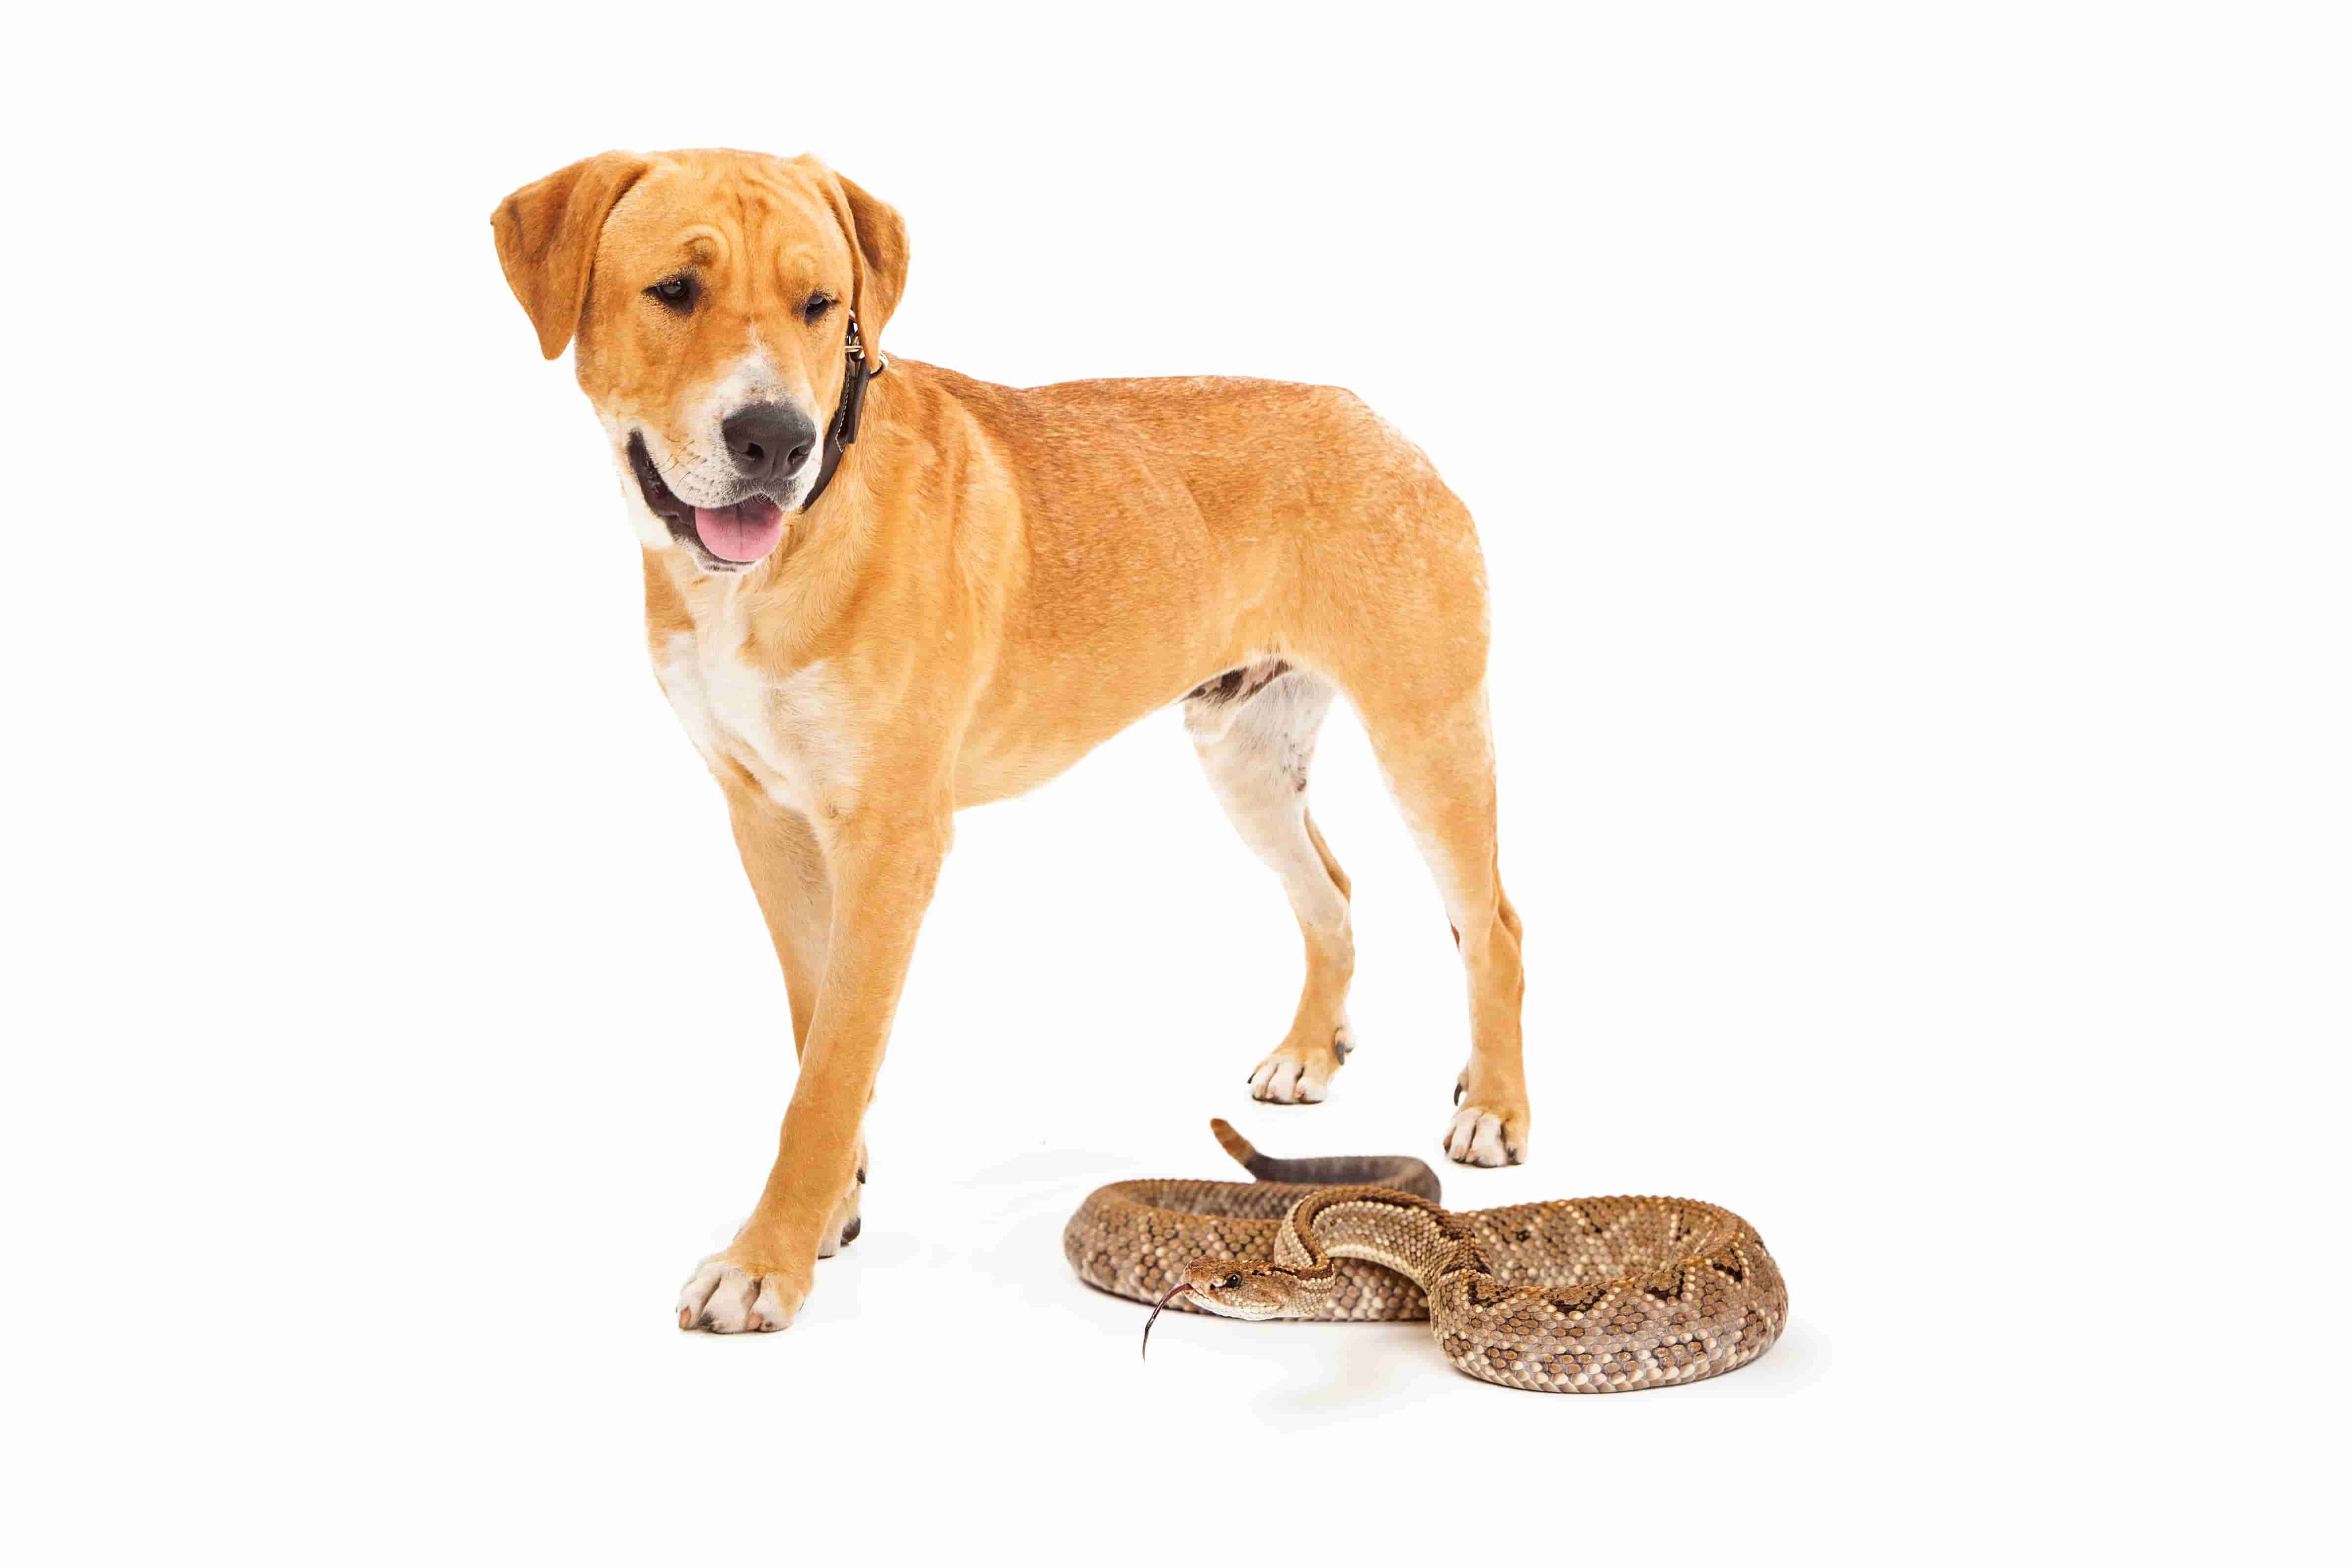 Dog and snake